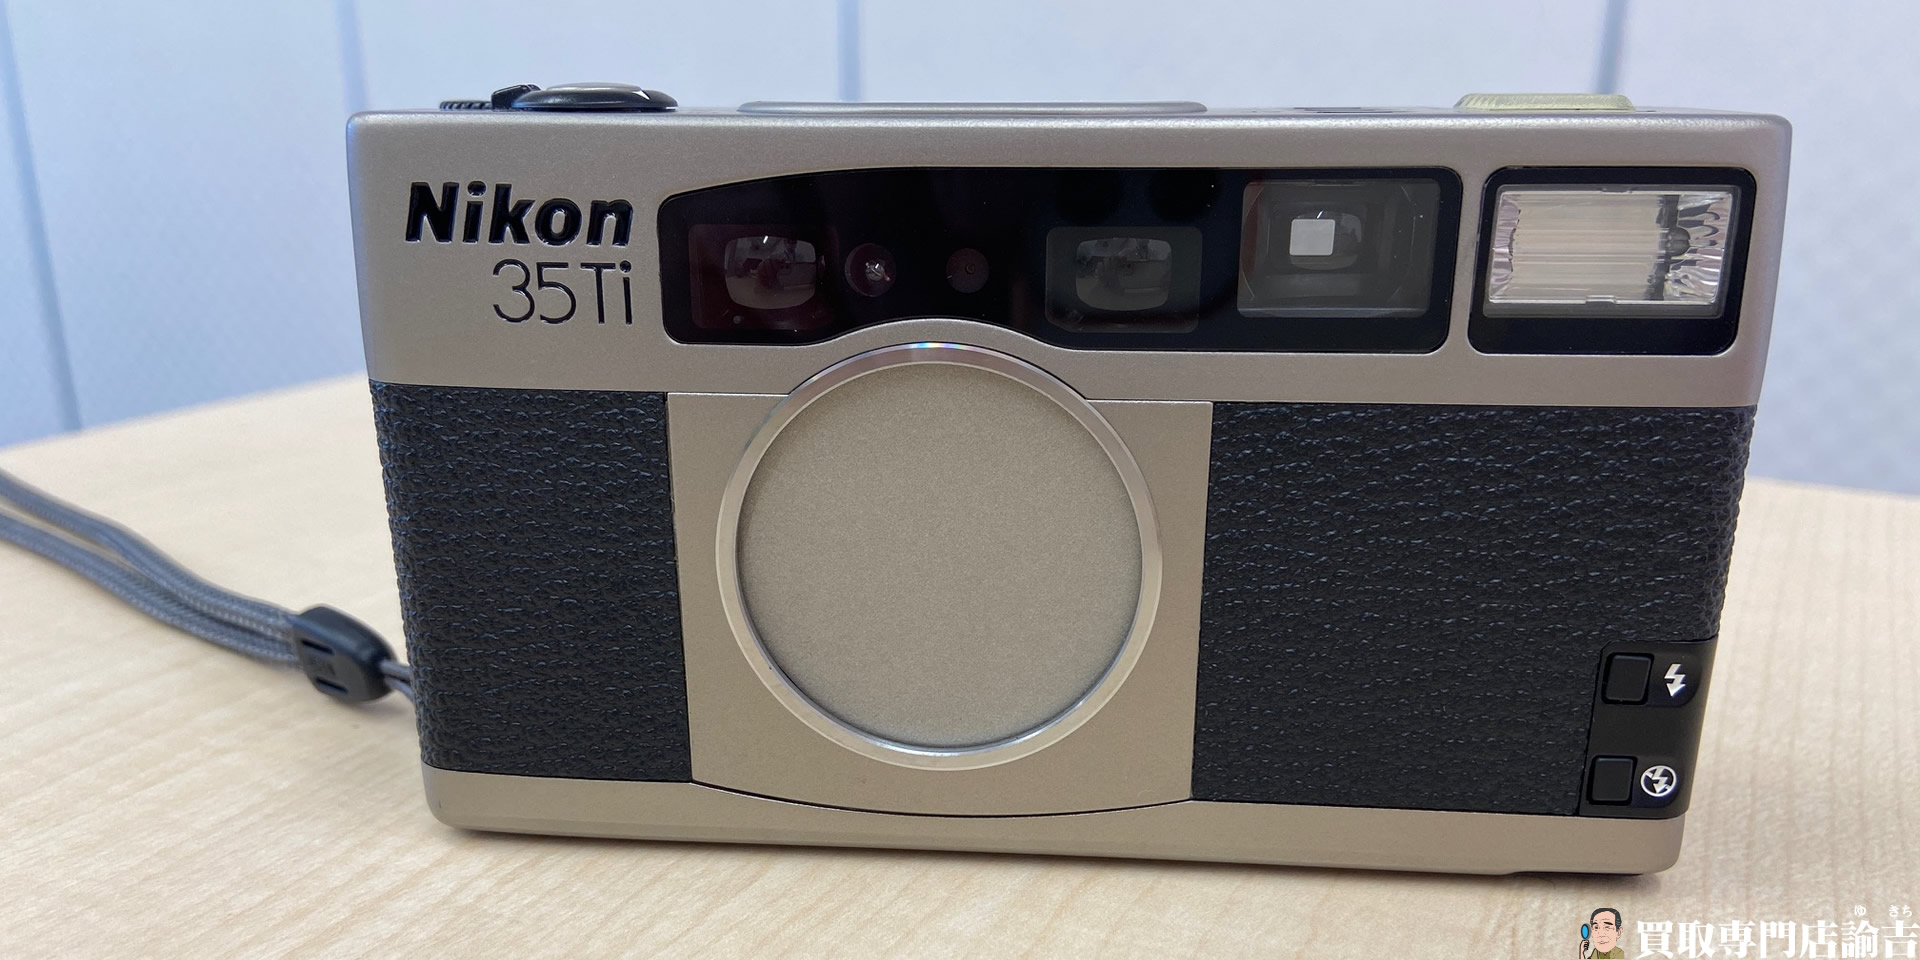 Nikonフィルムカメラ「35Ti」